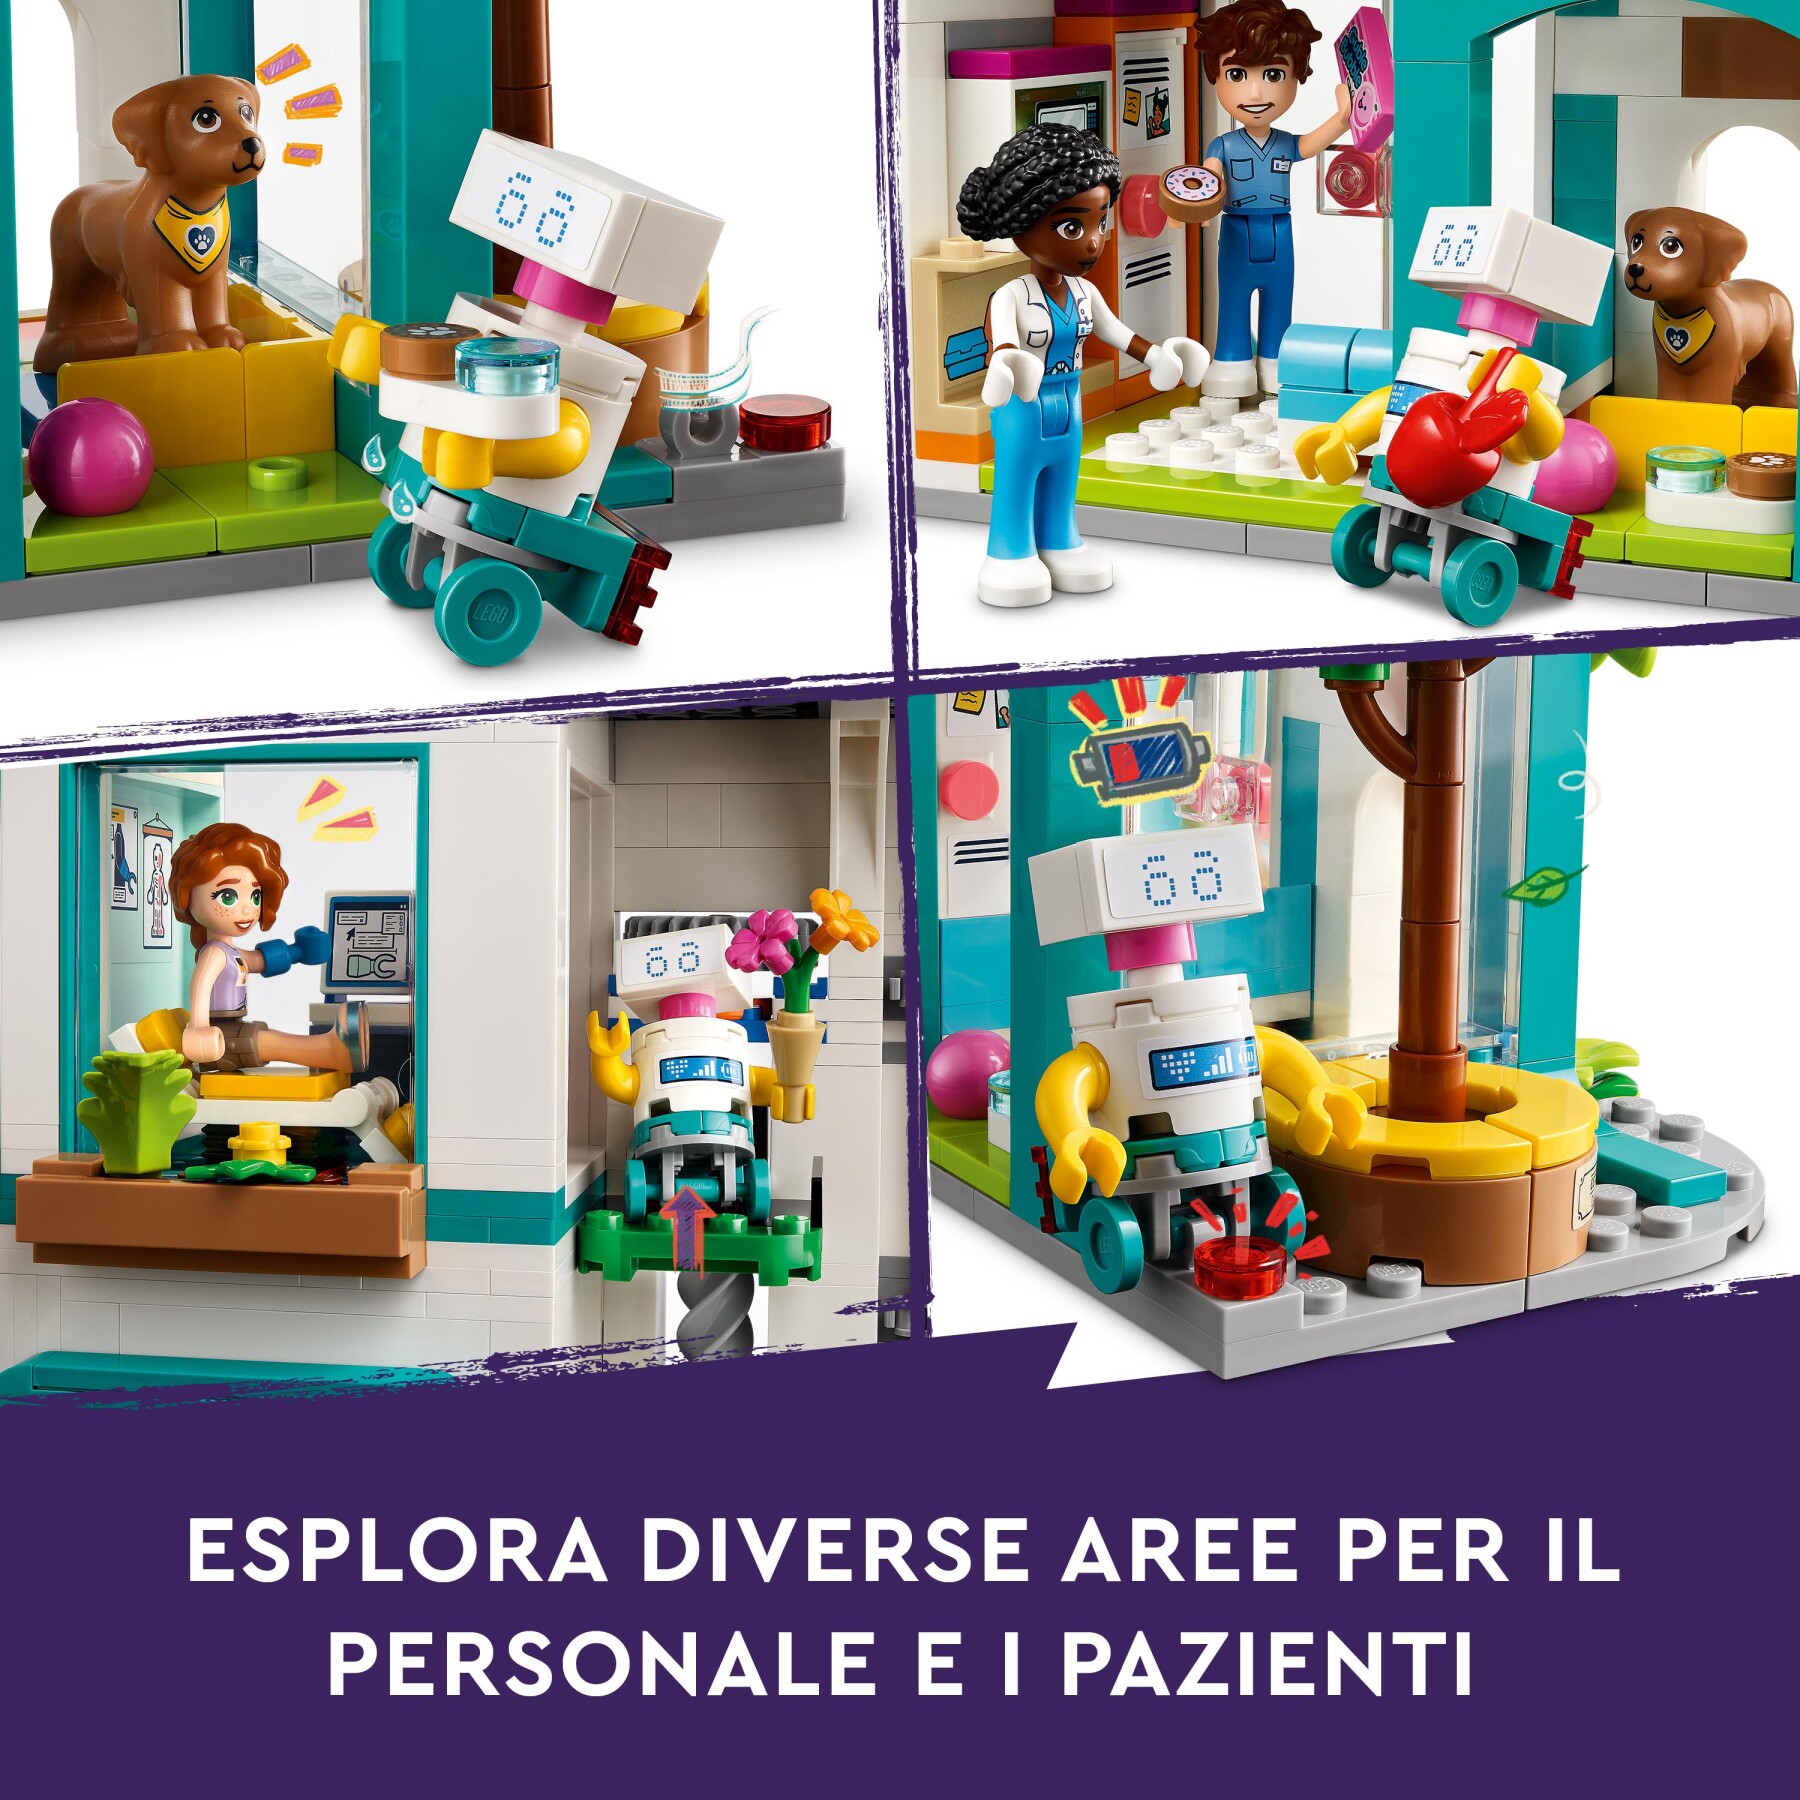 Lego friends 42621 ospedale di heartlake city, giochi educativi per bambini di 7+ con elicottero giocattolo e 5 mini bamboline - LEGO FRIENDS